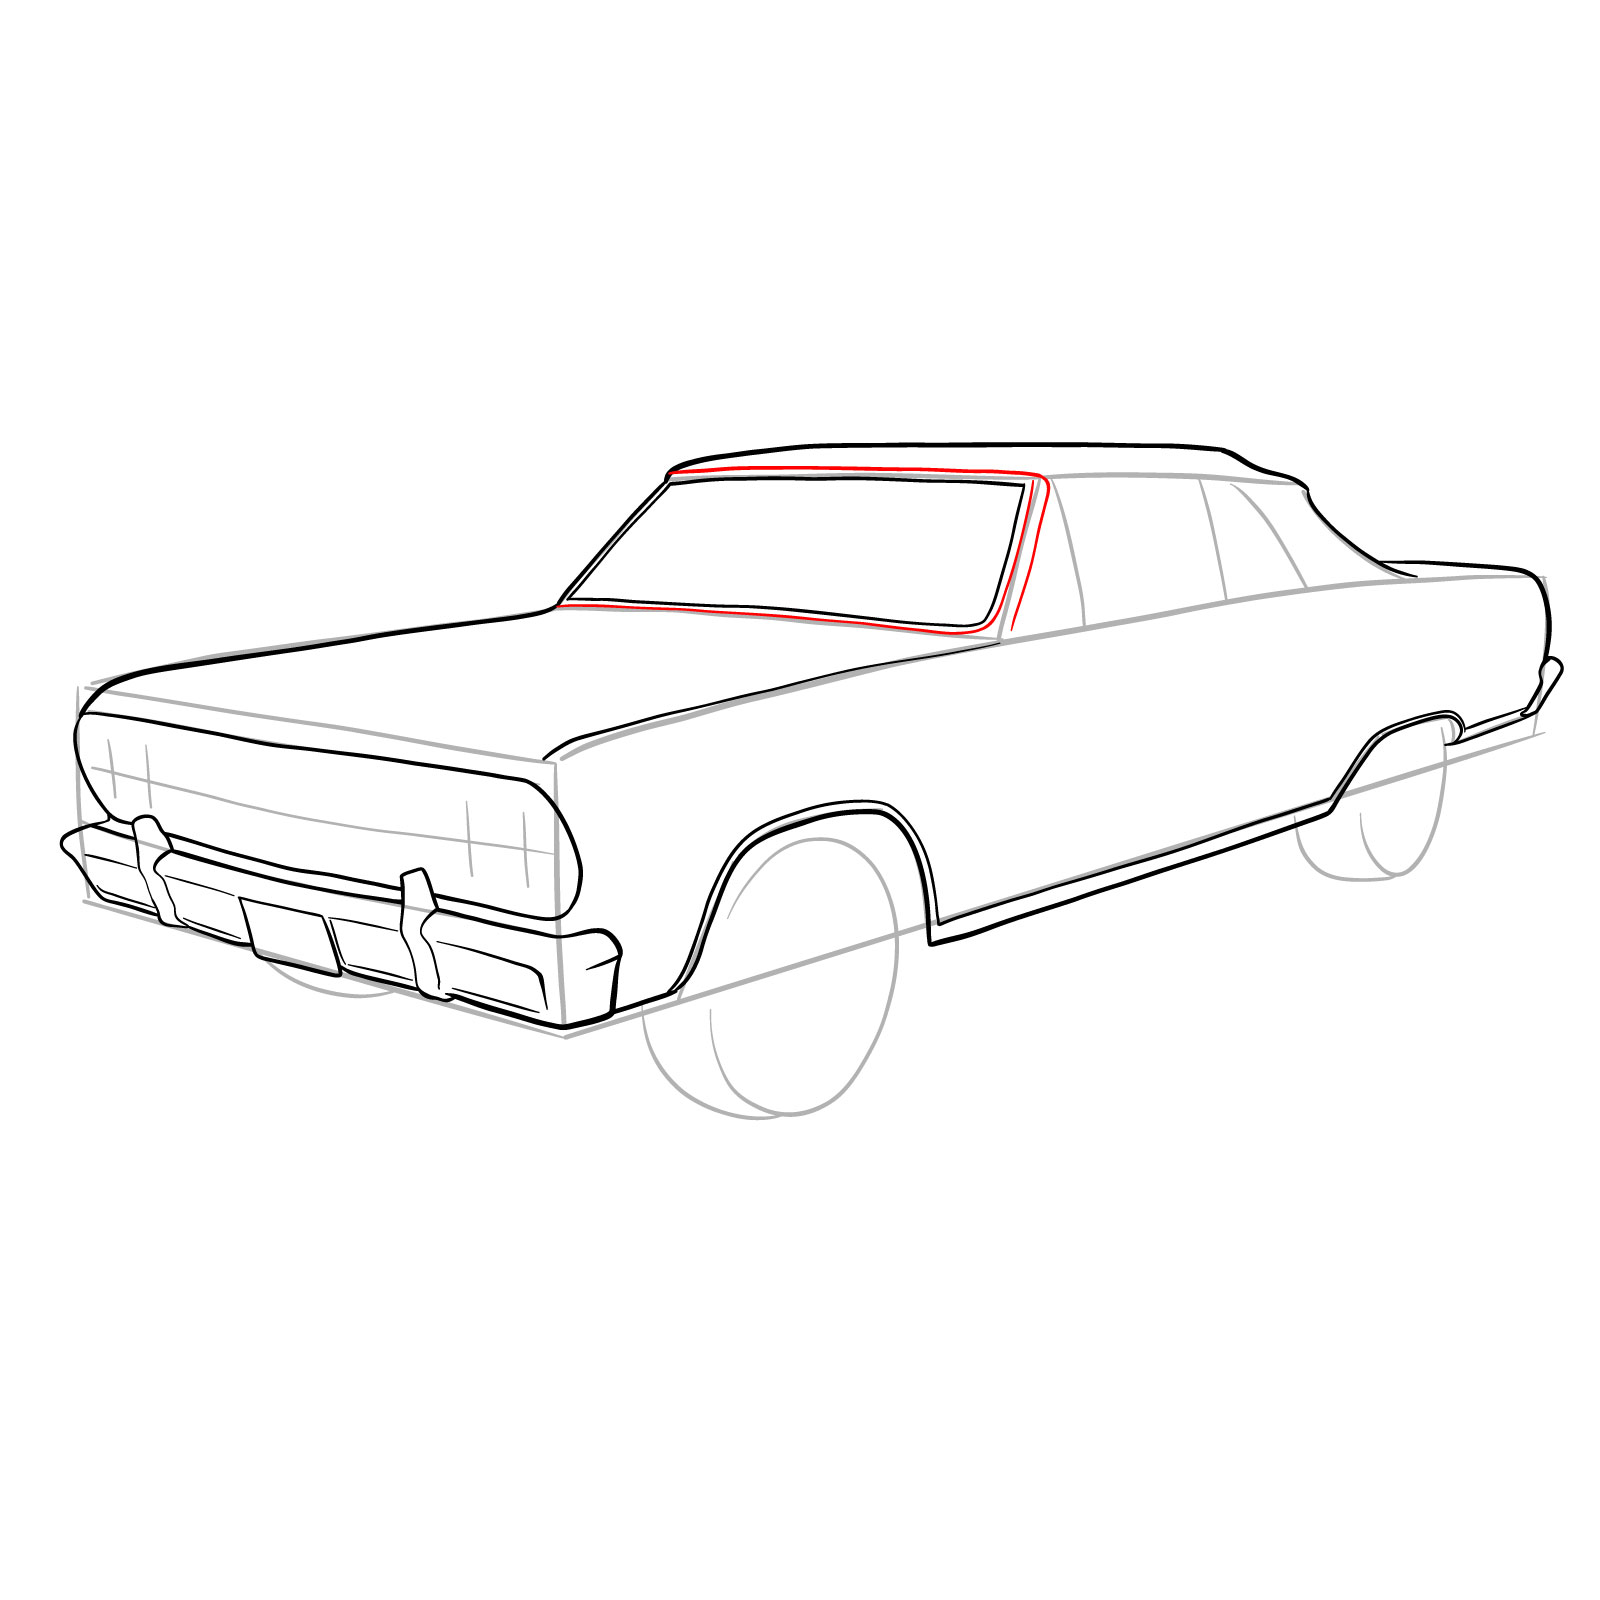 How to draw 1964 Chevrolet Malibu - step 18